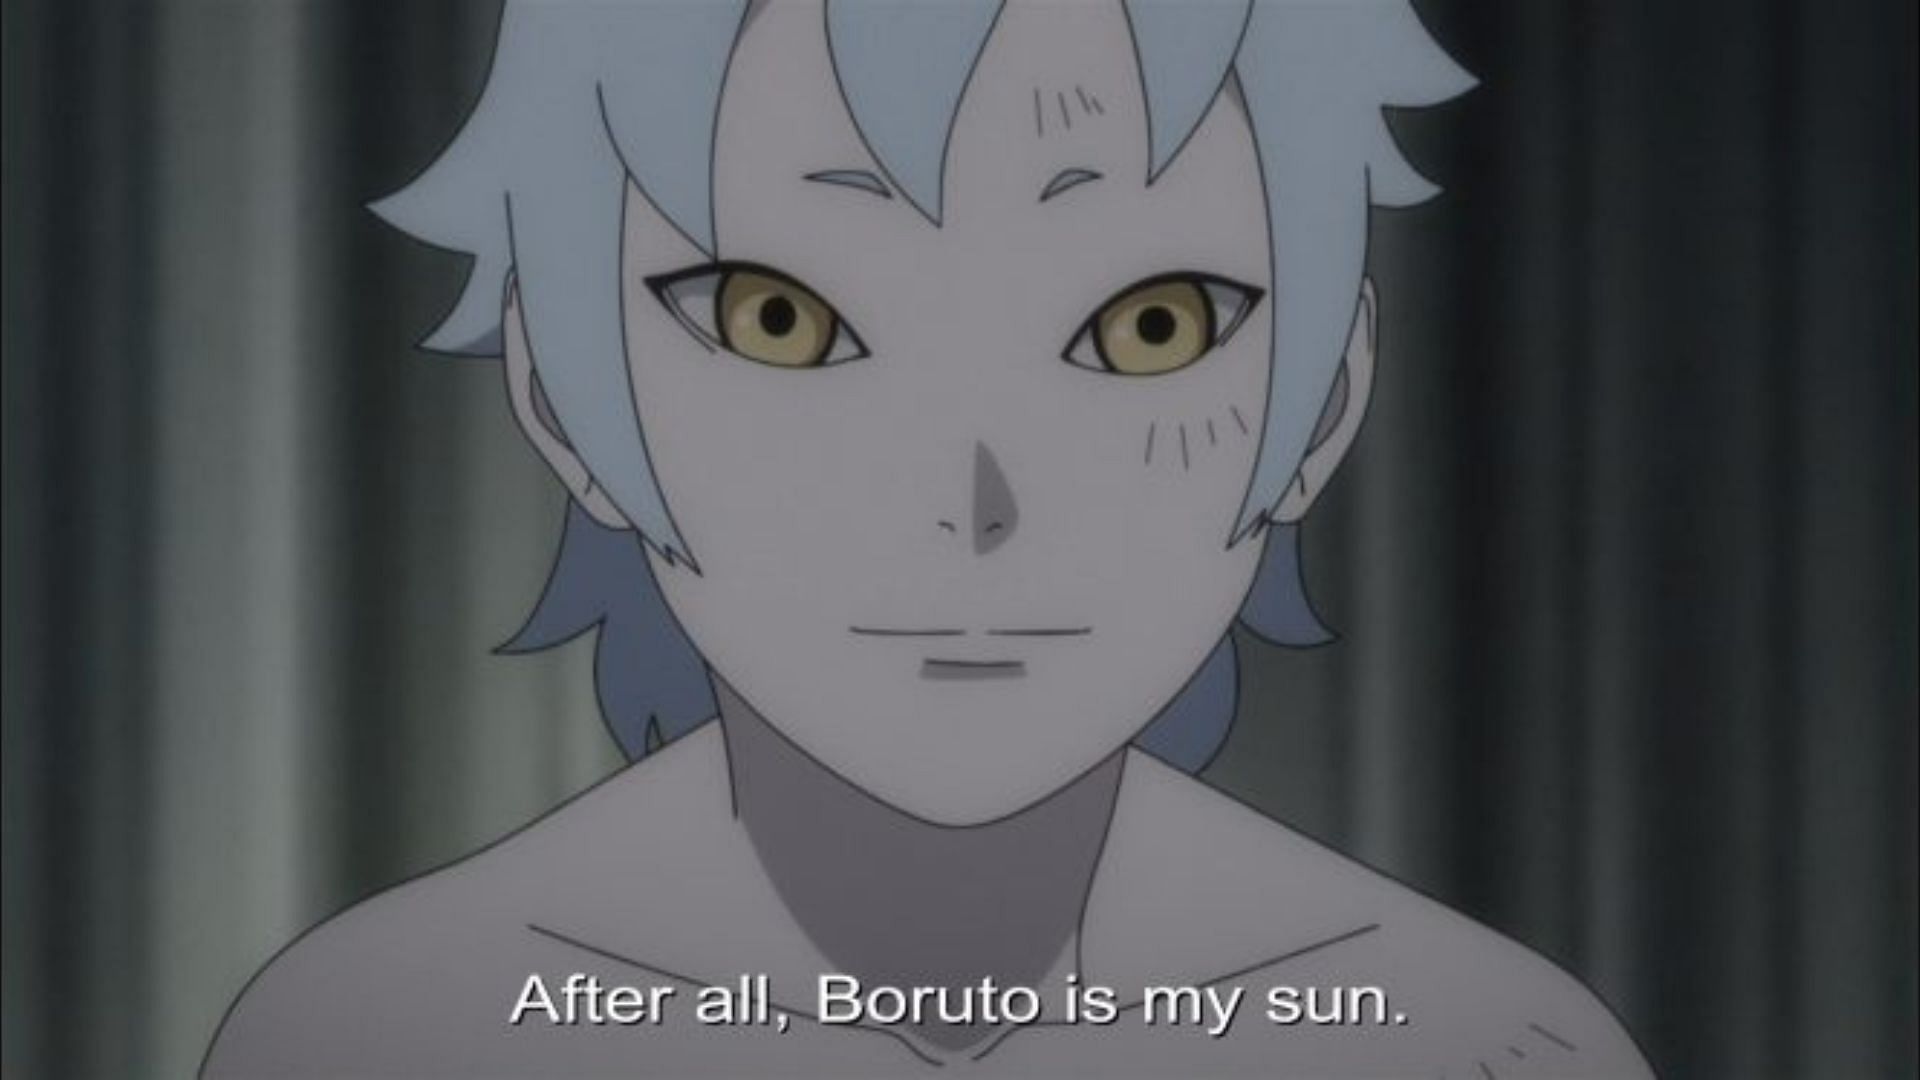 Mitsuki talk about Boruto as his sun (Image via Studio Pierrot)